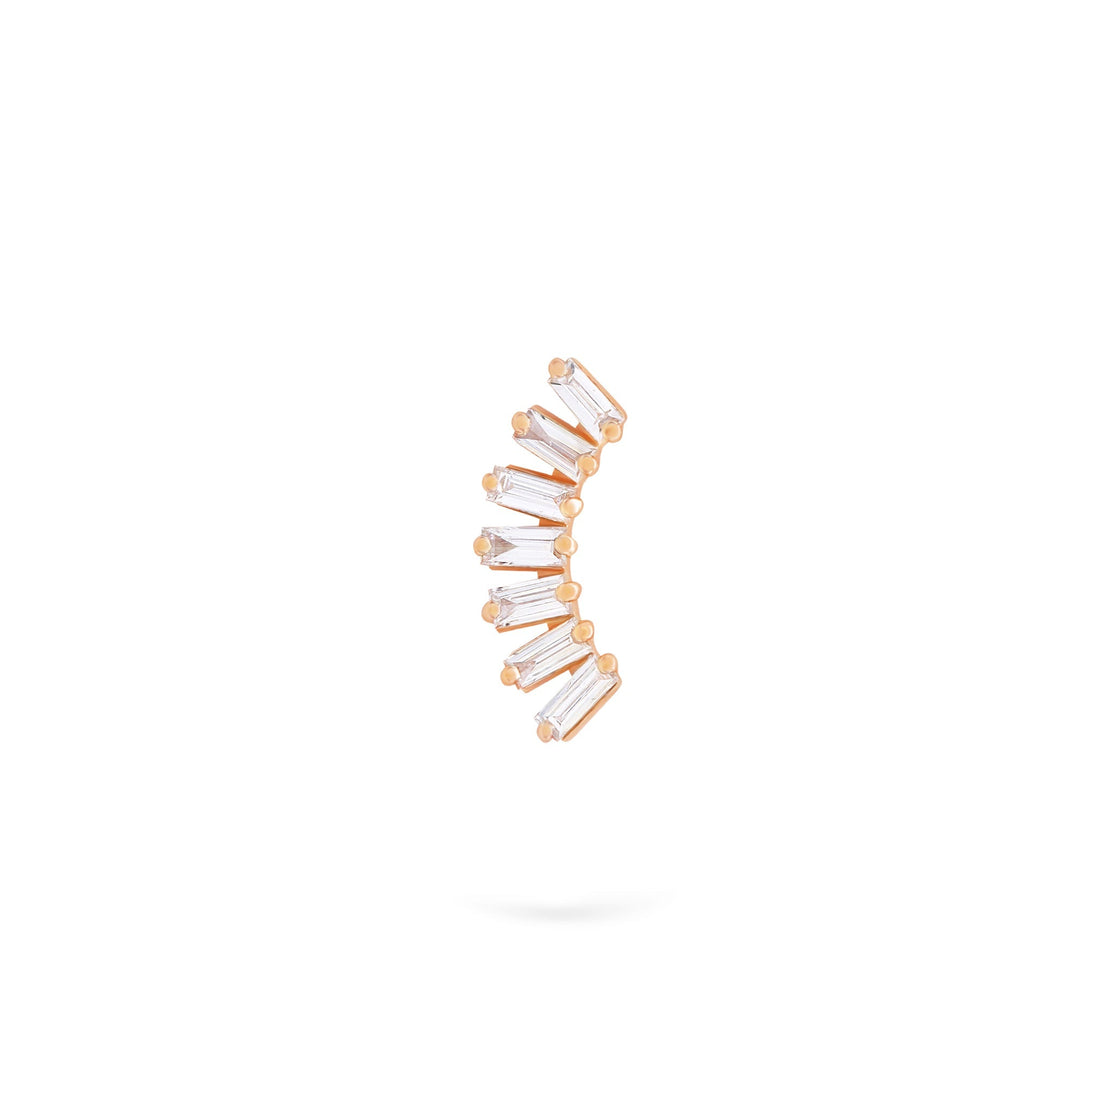 Gilda Jewelry Baguette Studs | Diamond Earrings | 14K Gold - Rose / Single: 0.13 Cts. | Cut - earrings Zengoda Shop